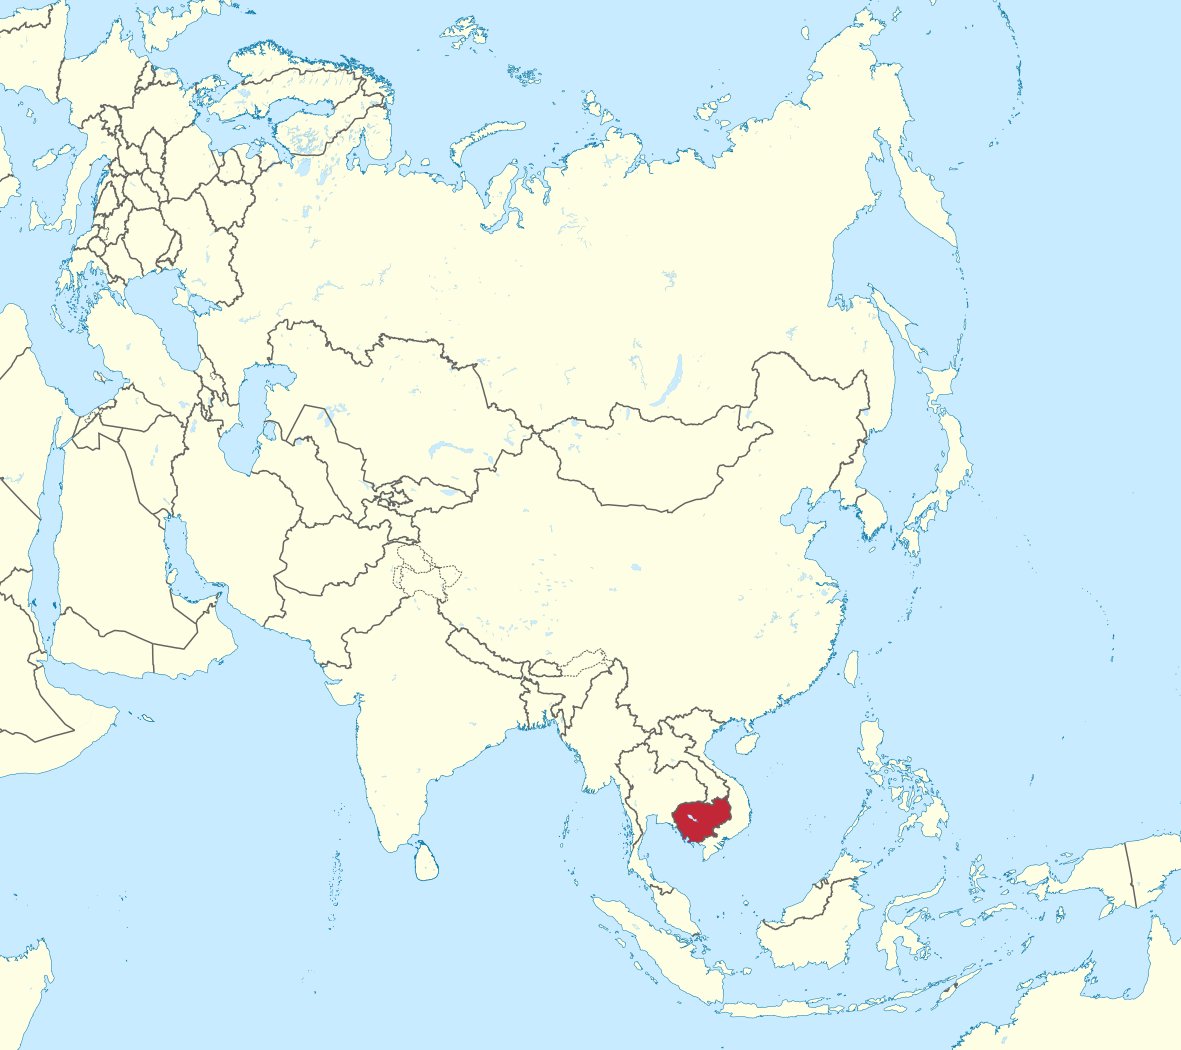 Le Cambodge est un petit pays d'Asie du Sud-Est, coincée entre la Thaïlande et le Vietnam et une frontière avec le Laos. Sa capitale est Phnom Penh (se prononce : "pnome peine")Pour les nuls en Géographie : en bas de la Chine et au-dessus de l'Océanie/Australie